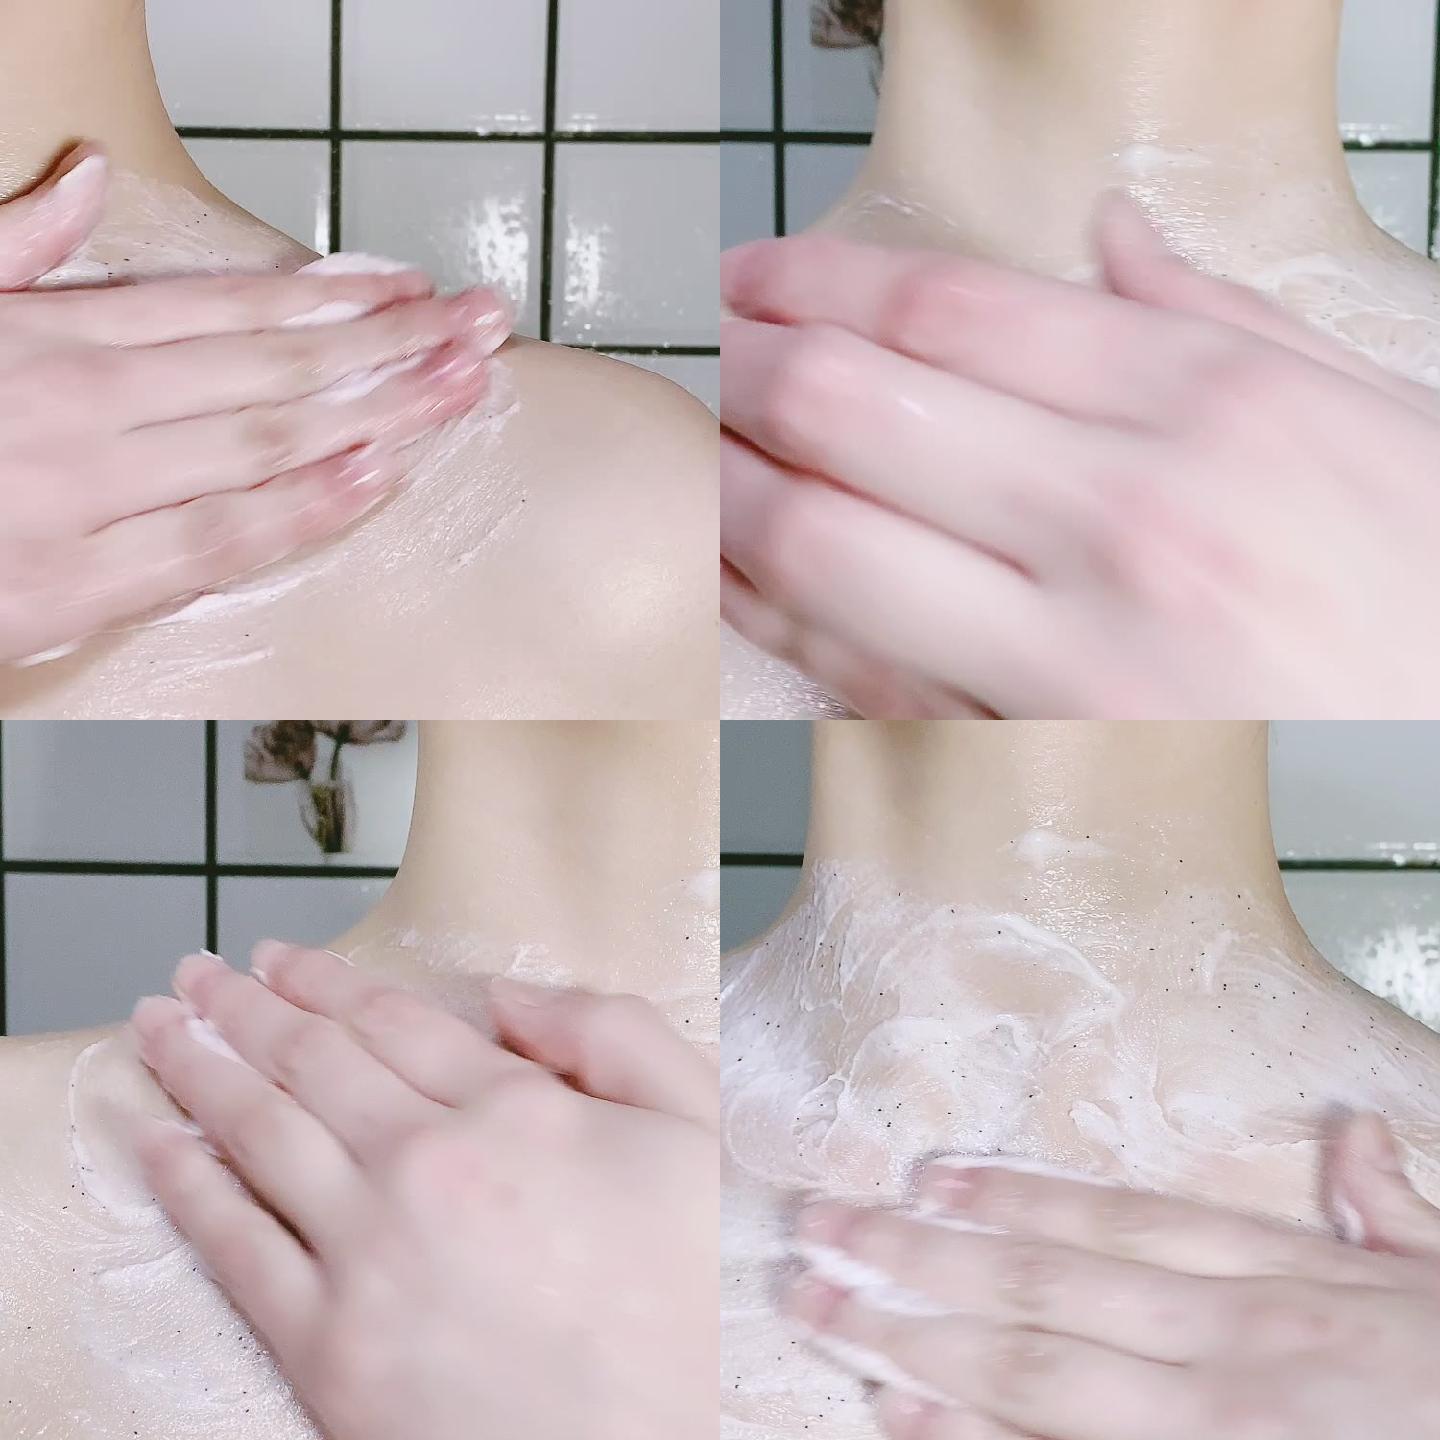 美女洗澡视频